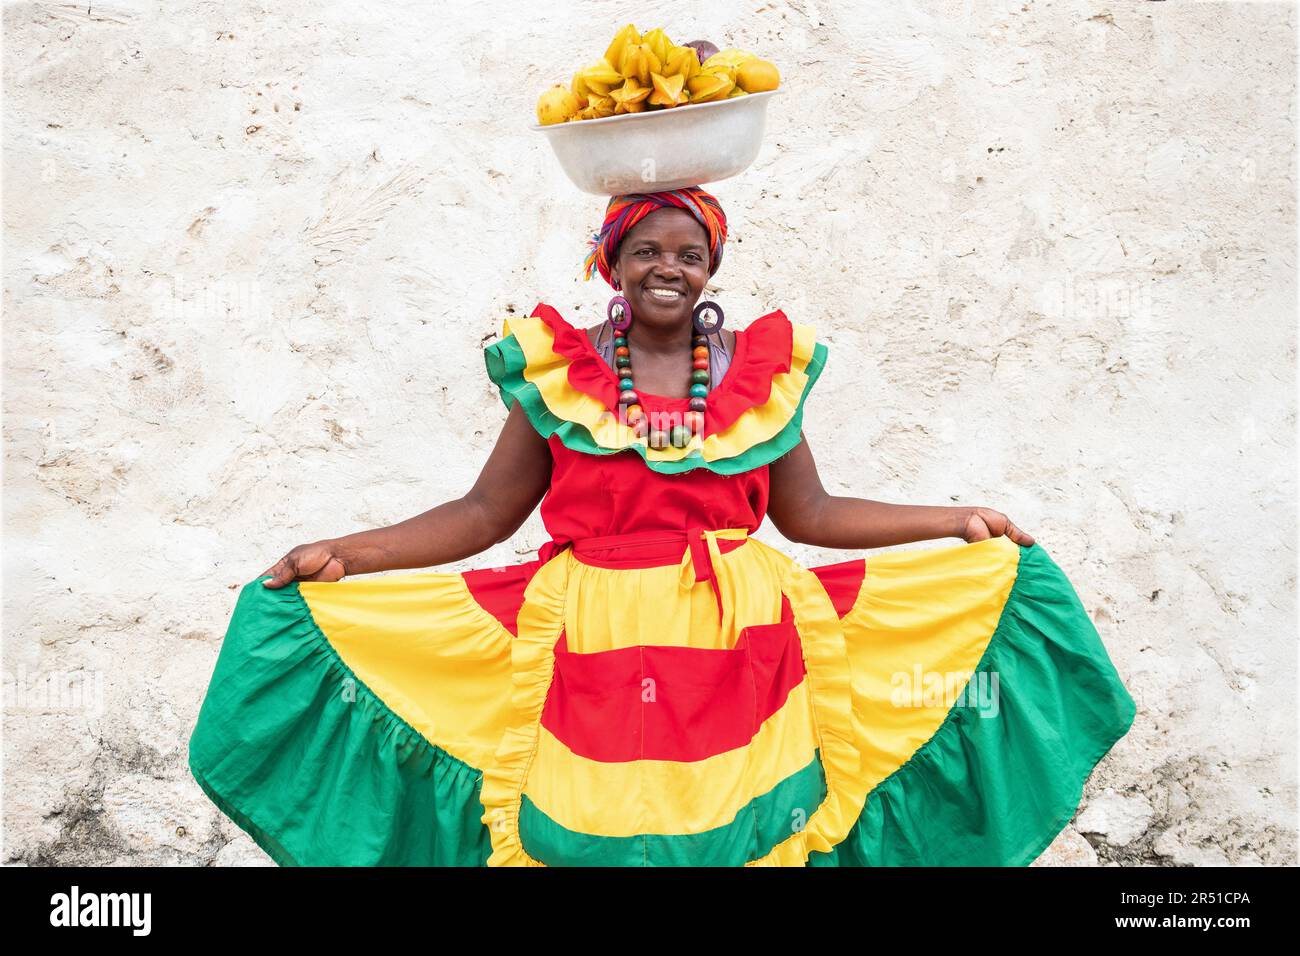 Fröhlicher Straßenverkäufer mit frischem Obst, auch bekannt als Palenquera, in der Altstadt von Cartagena de Indias, Kolumbien. Afro-kolumbianische Frau in traditioneller Kleidung. Stockfoto